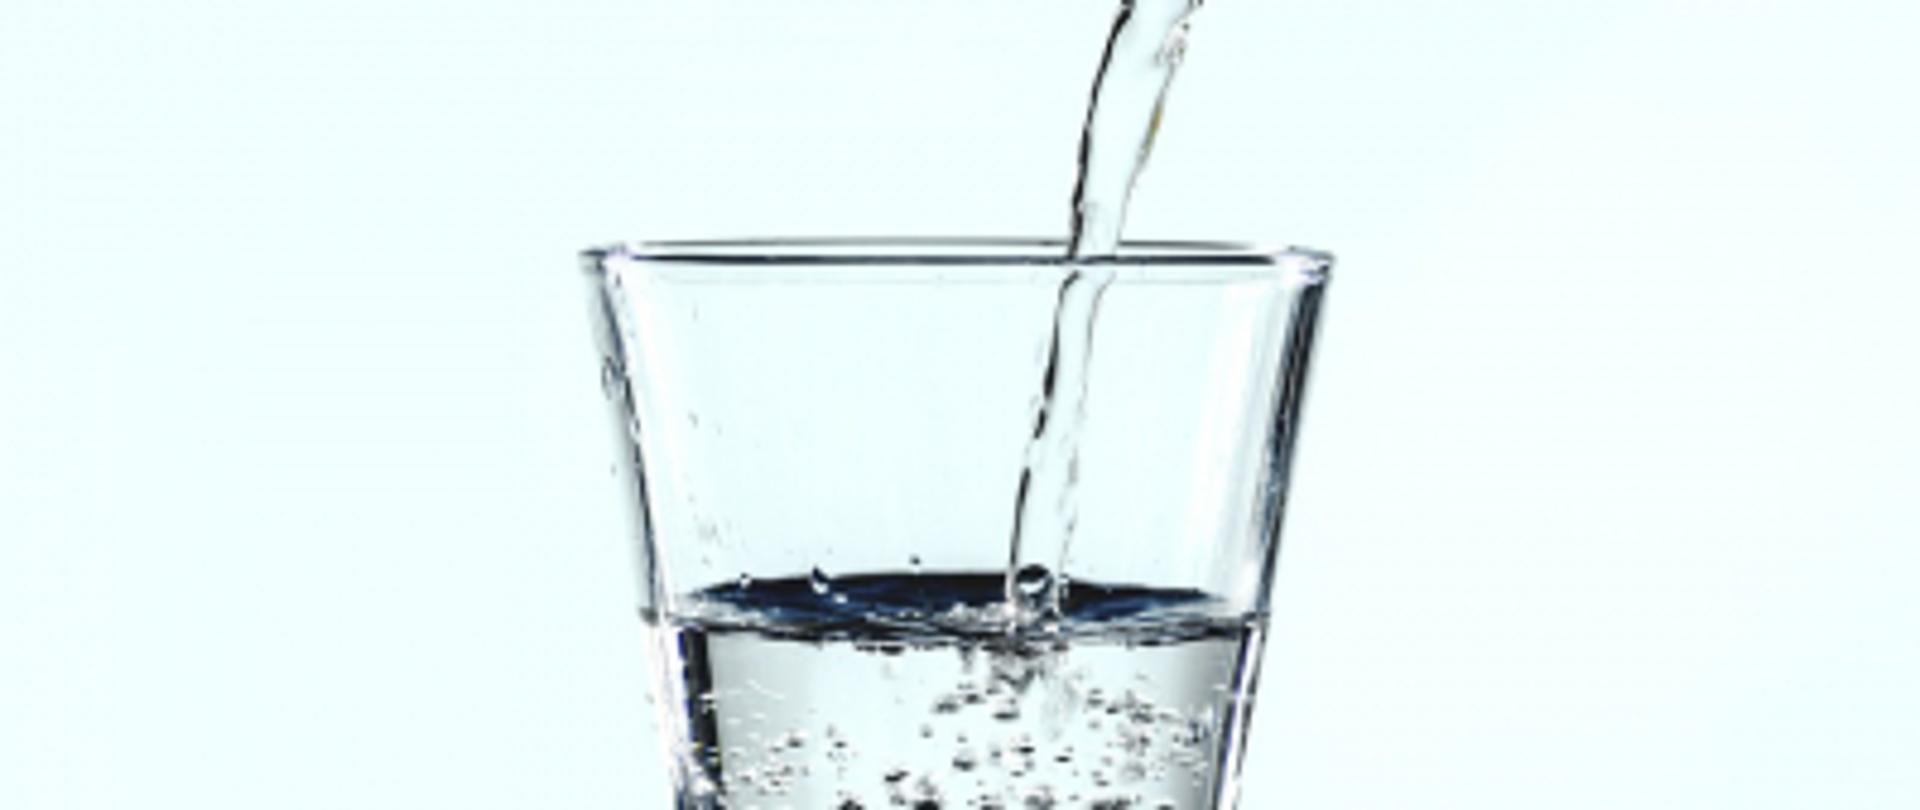 Szklanka, do której wlewana jest czysta woda